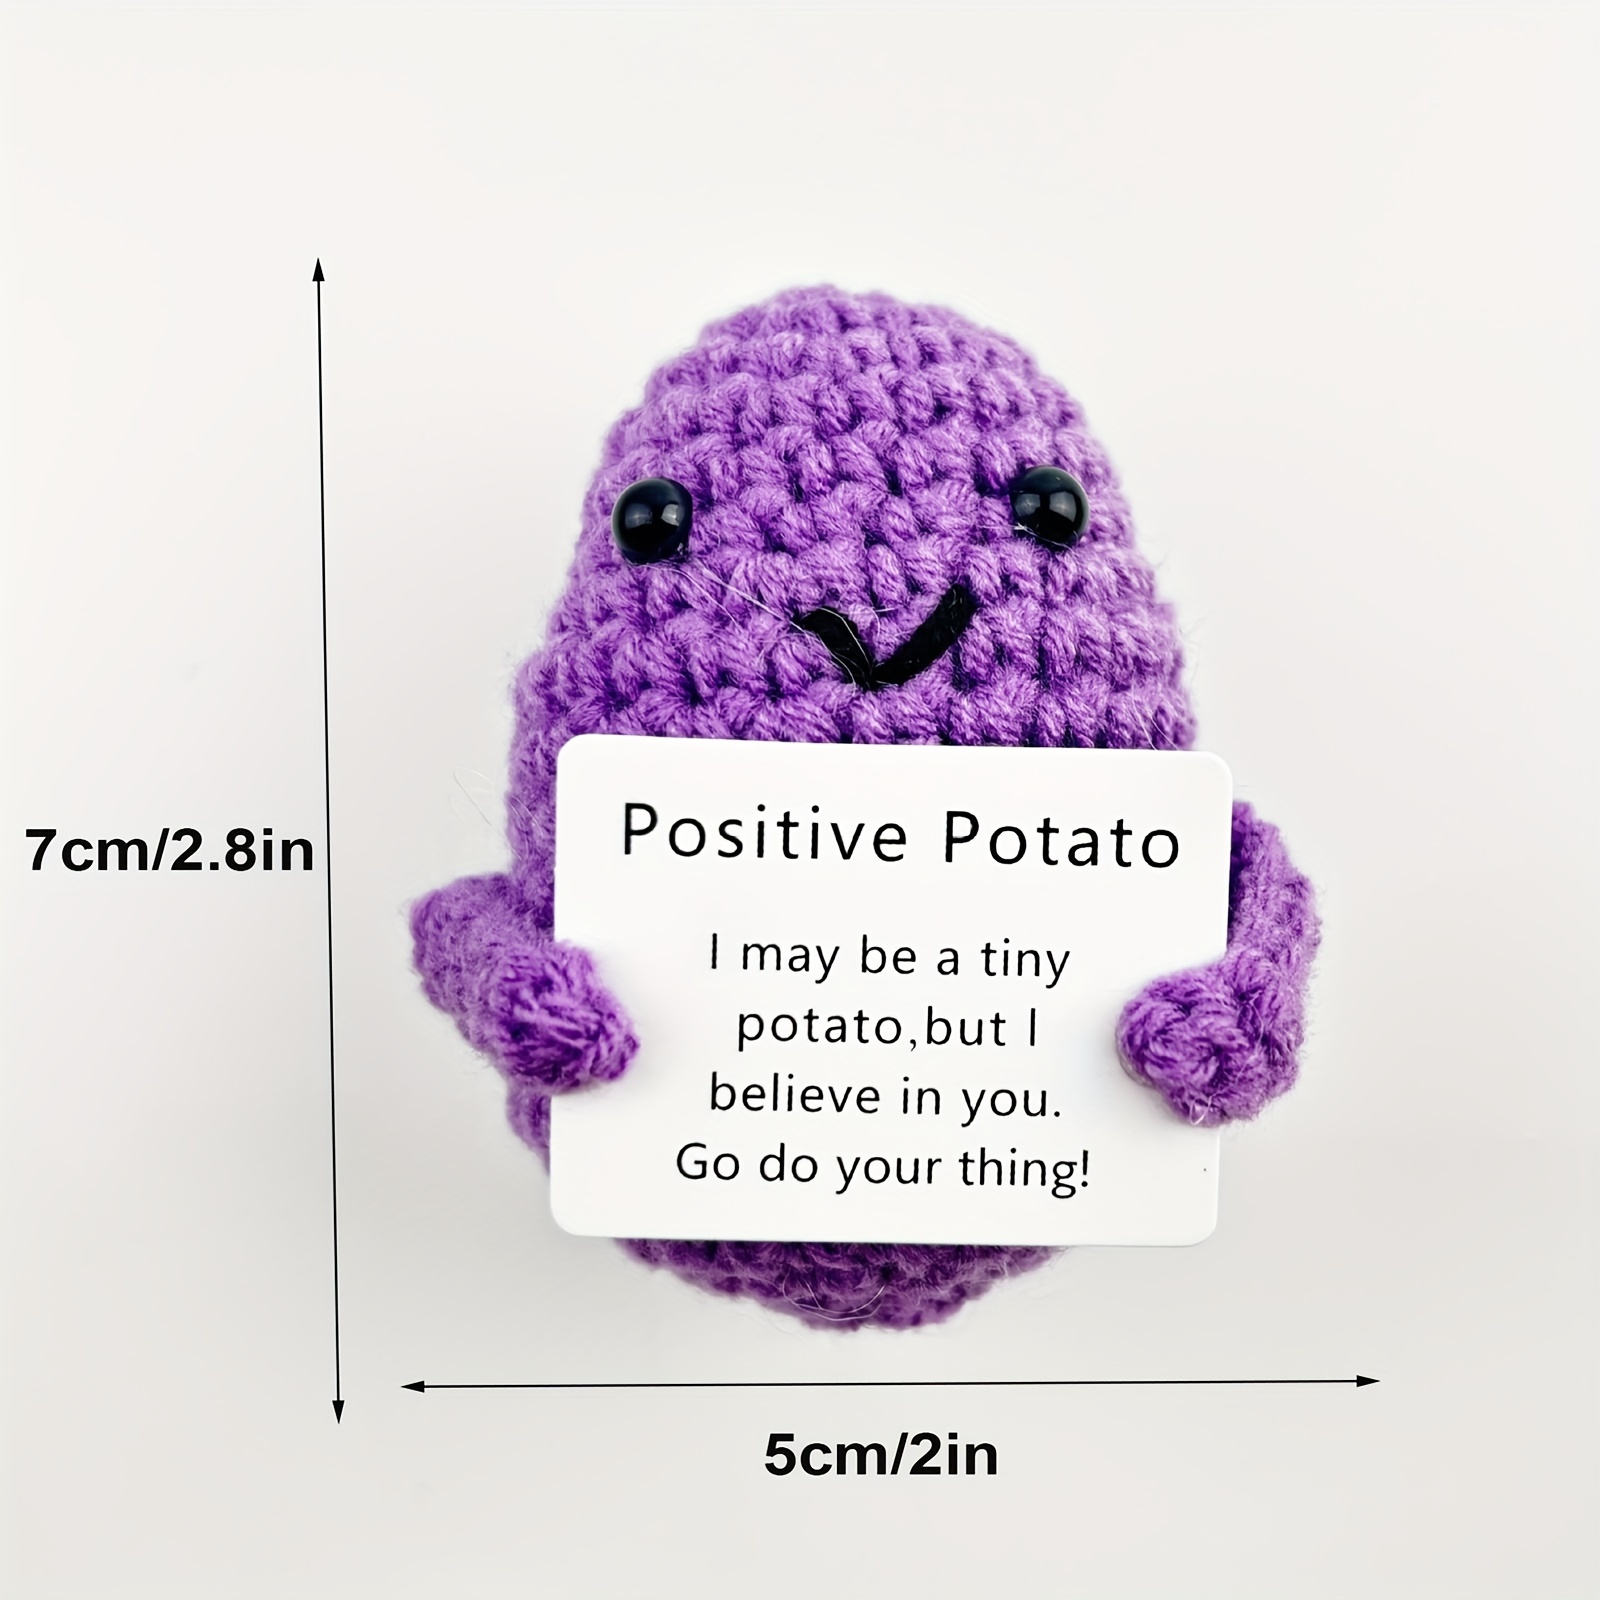 Positive Potato Crochet  Crochet projects, Fun crochet projects